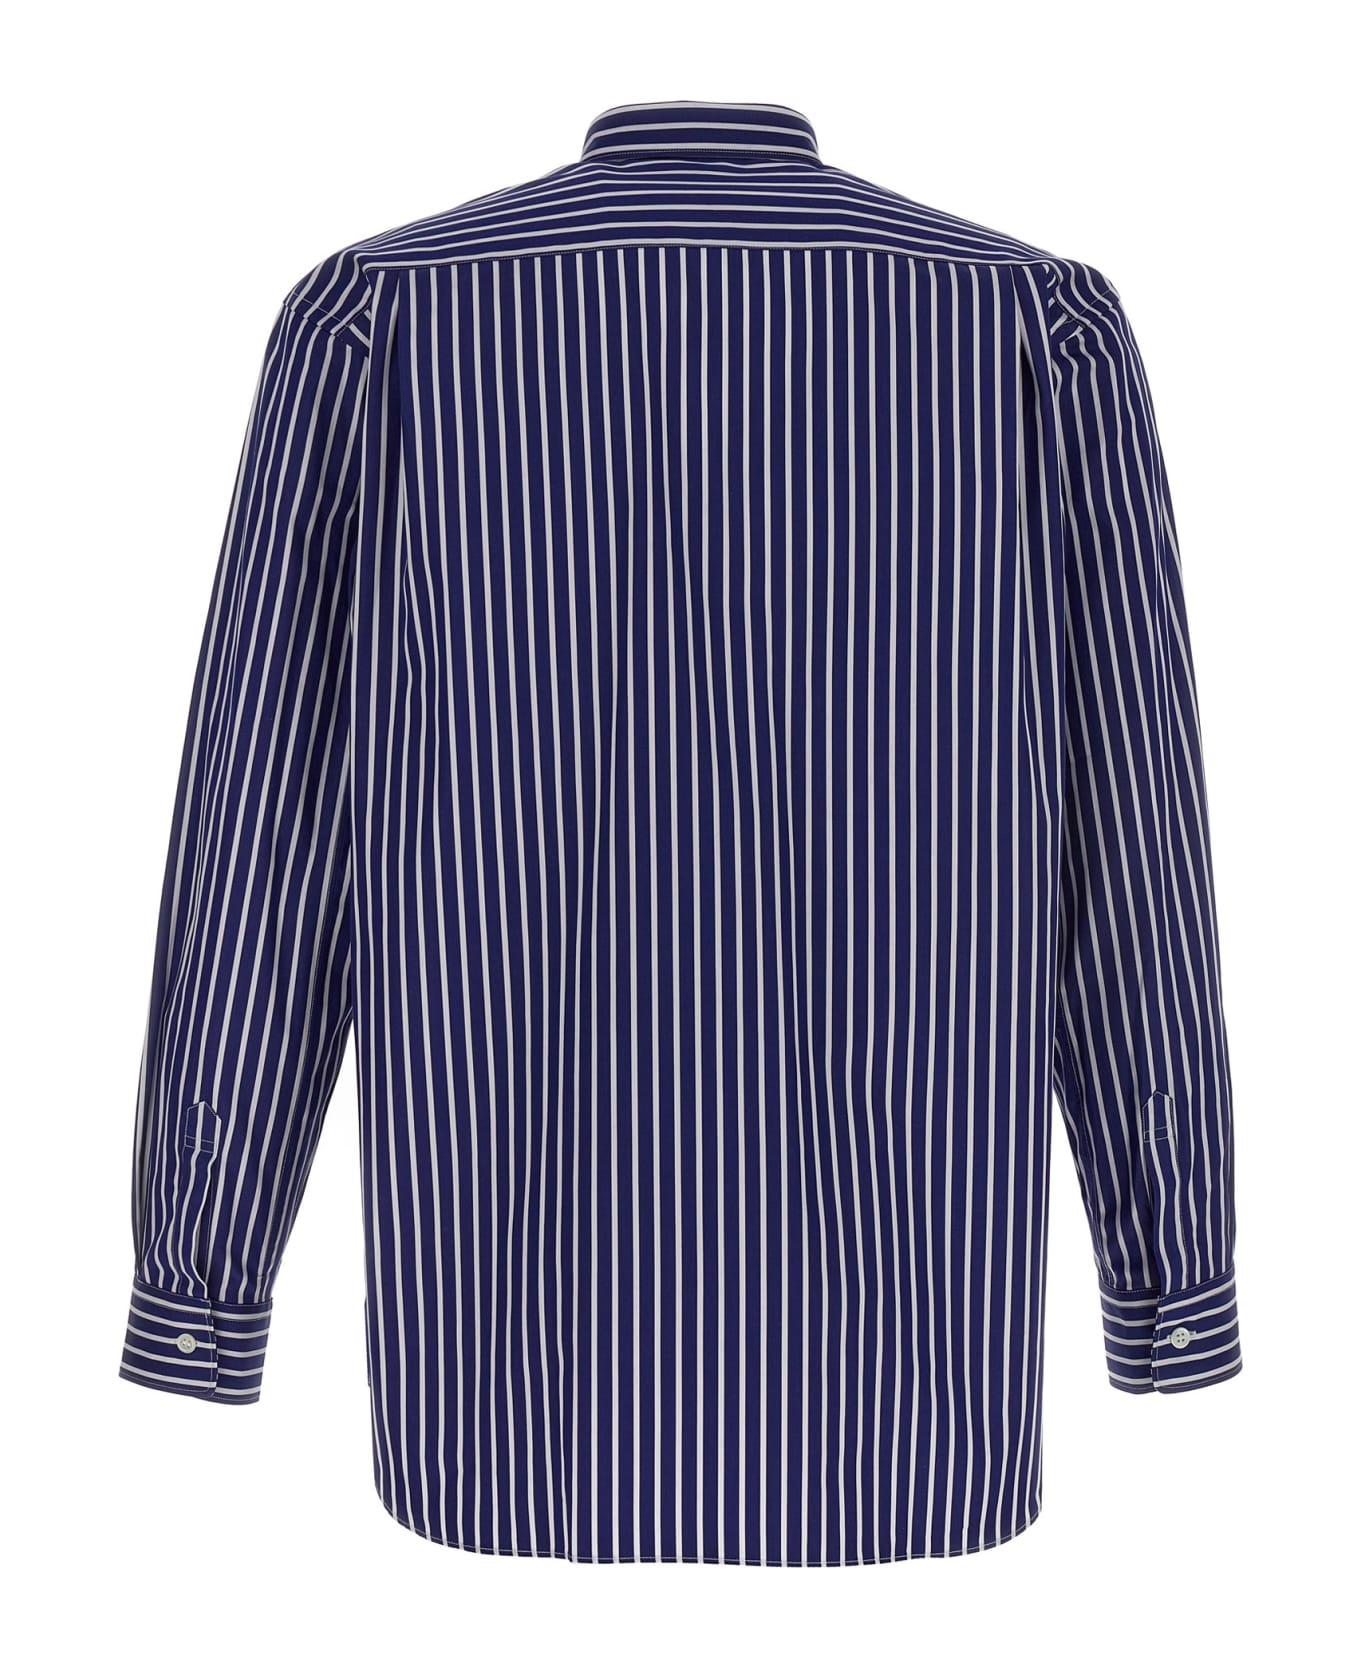 Comme des Garçons Shirt Striped Shirt - Multicolor